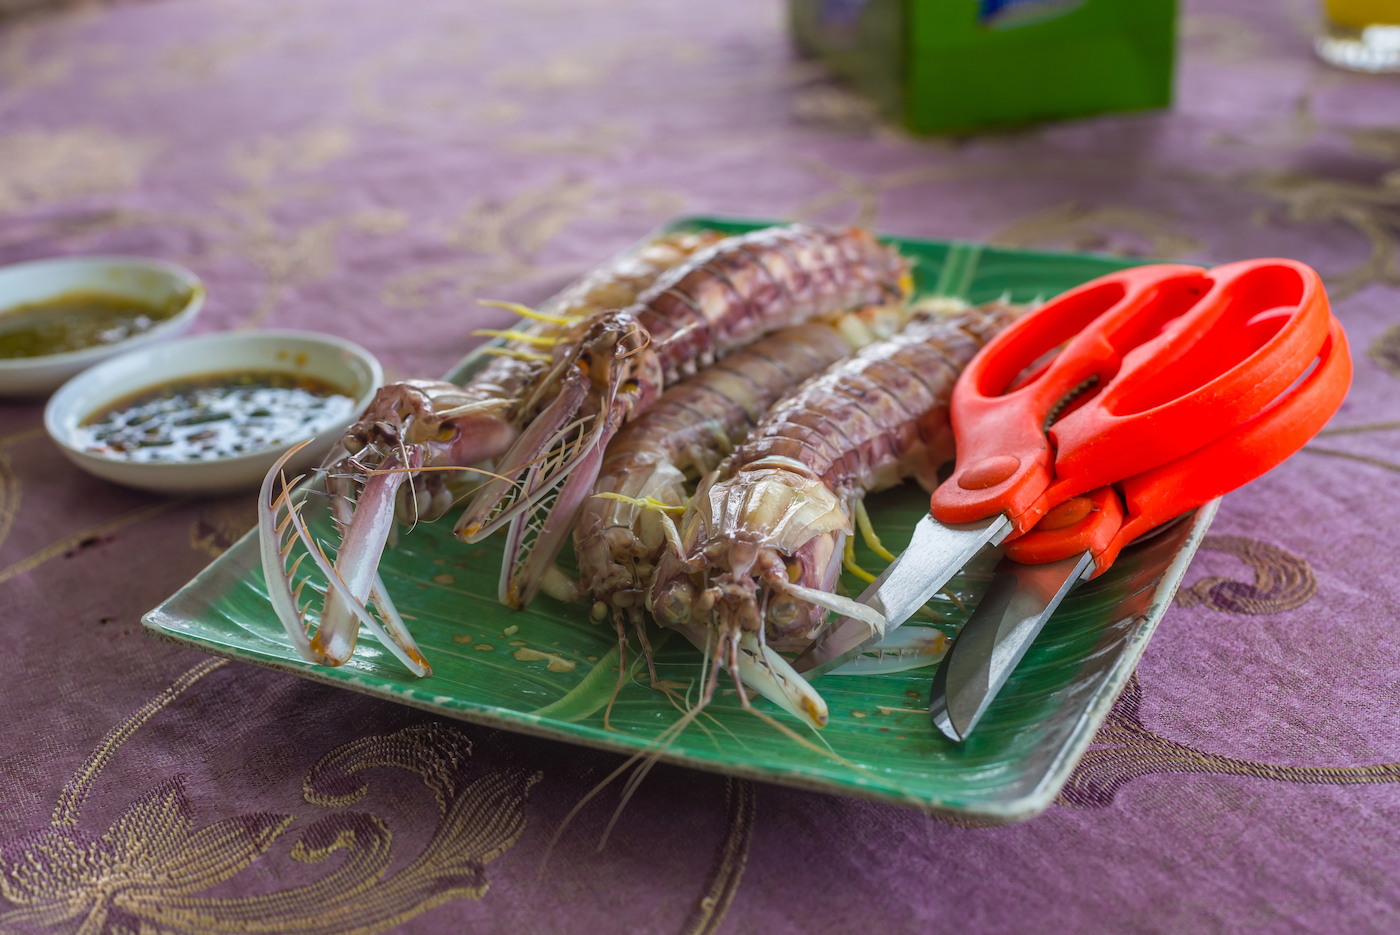 At Bukit Tambun's seafood restaurants, get your dinner made to order